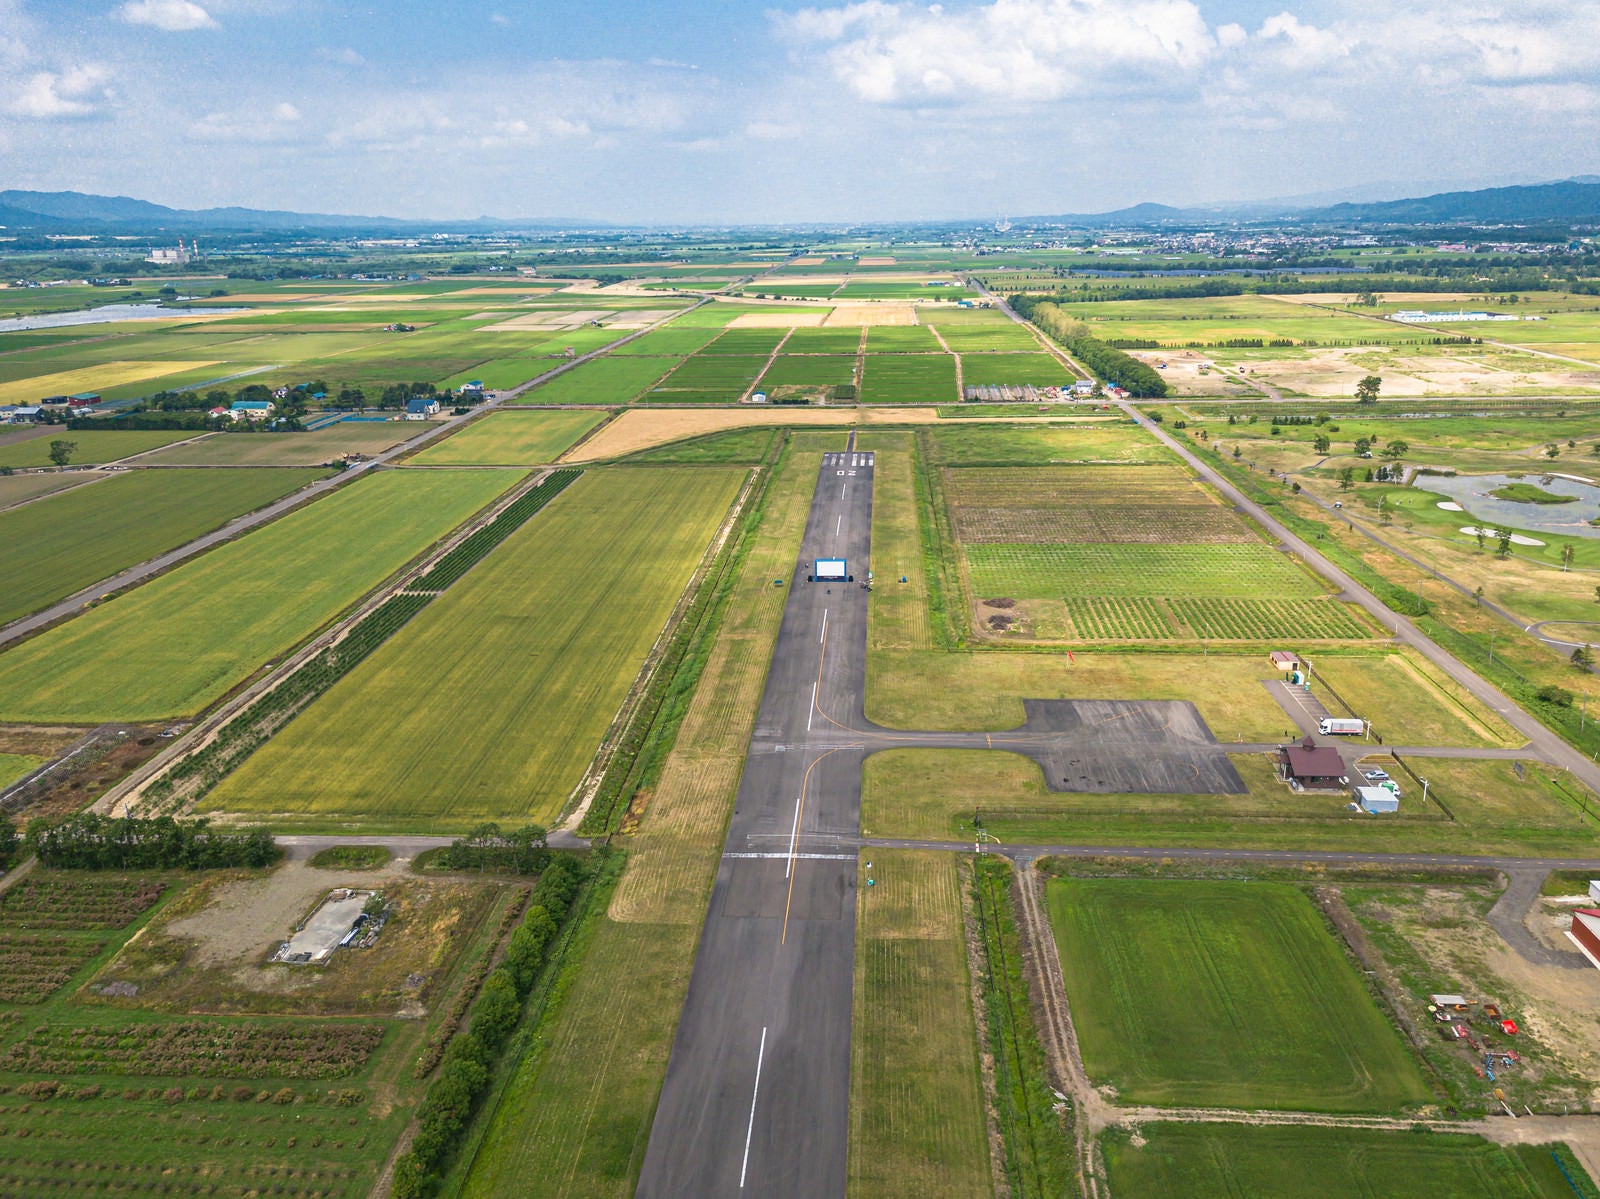 「美唄市農道離着陸場の上空から滑走路上の巨大スクリーン」の写真